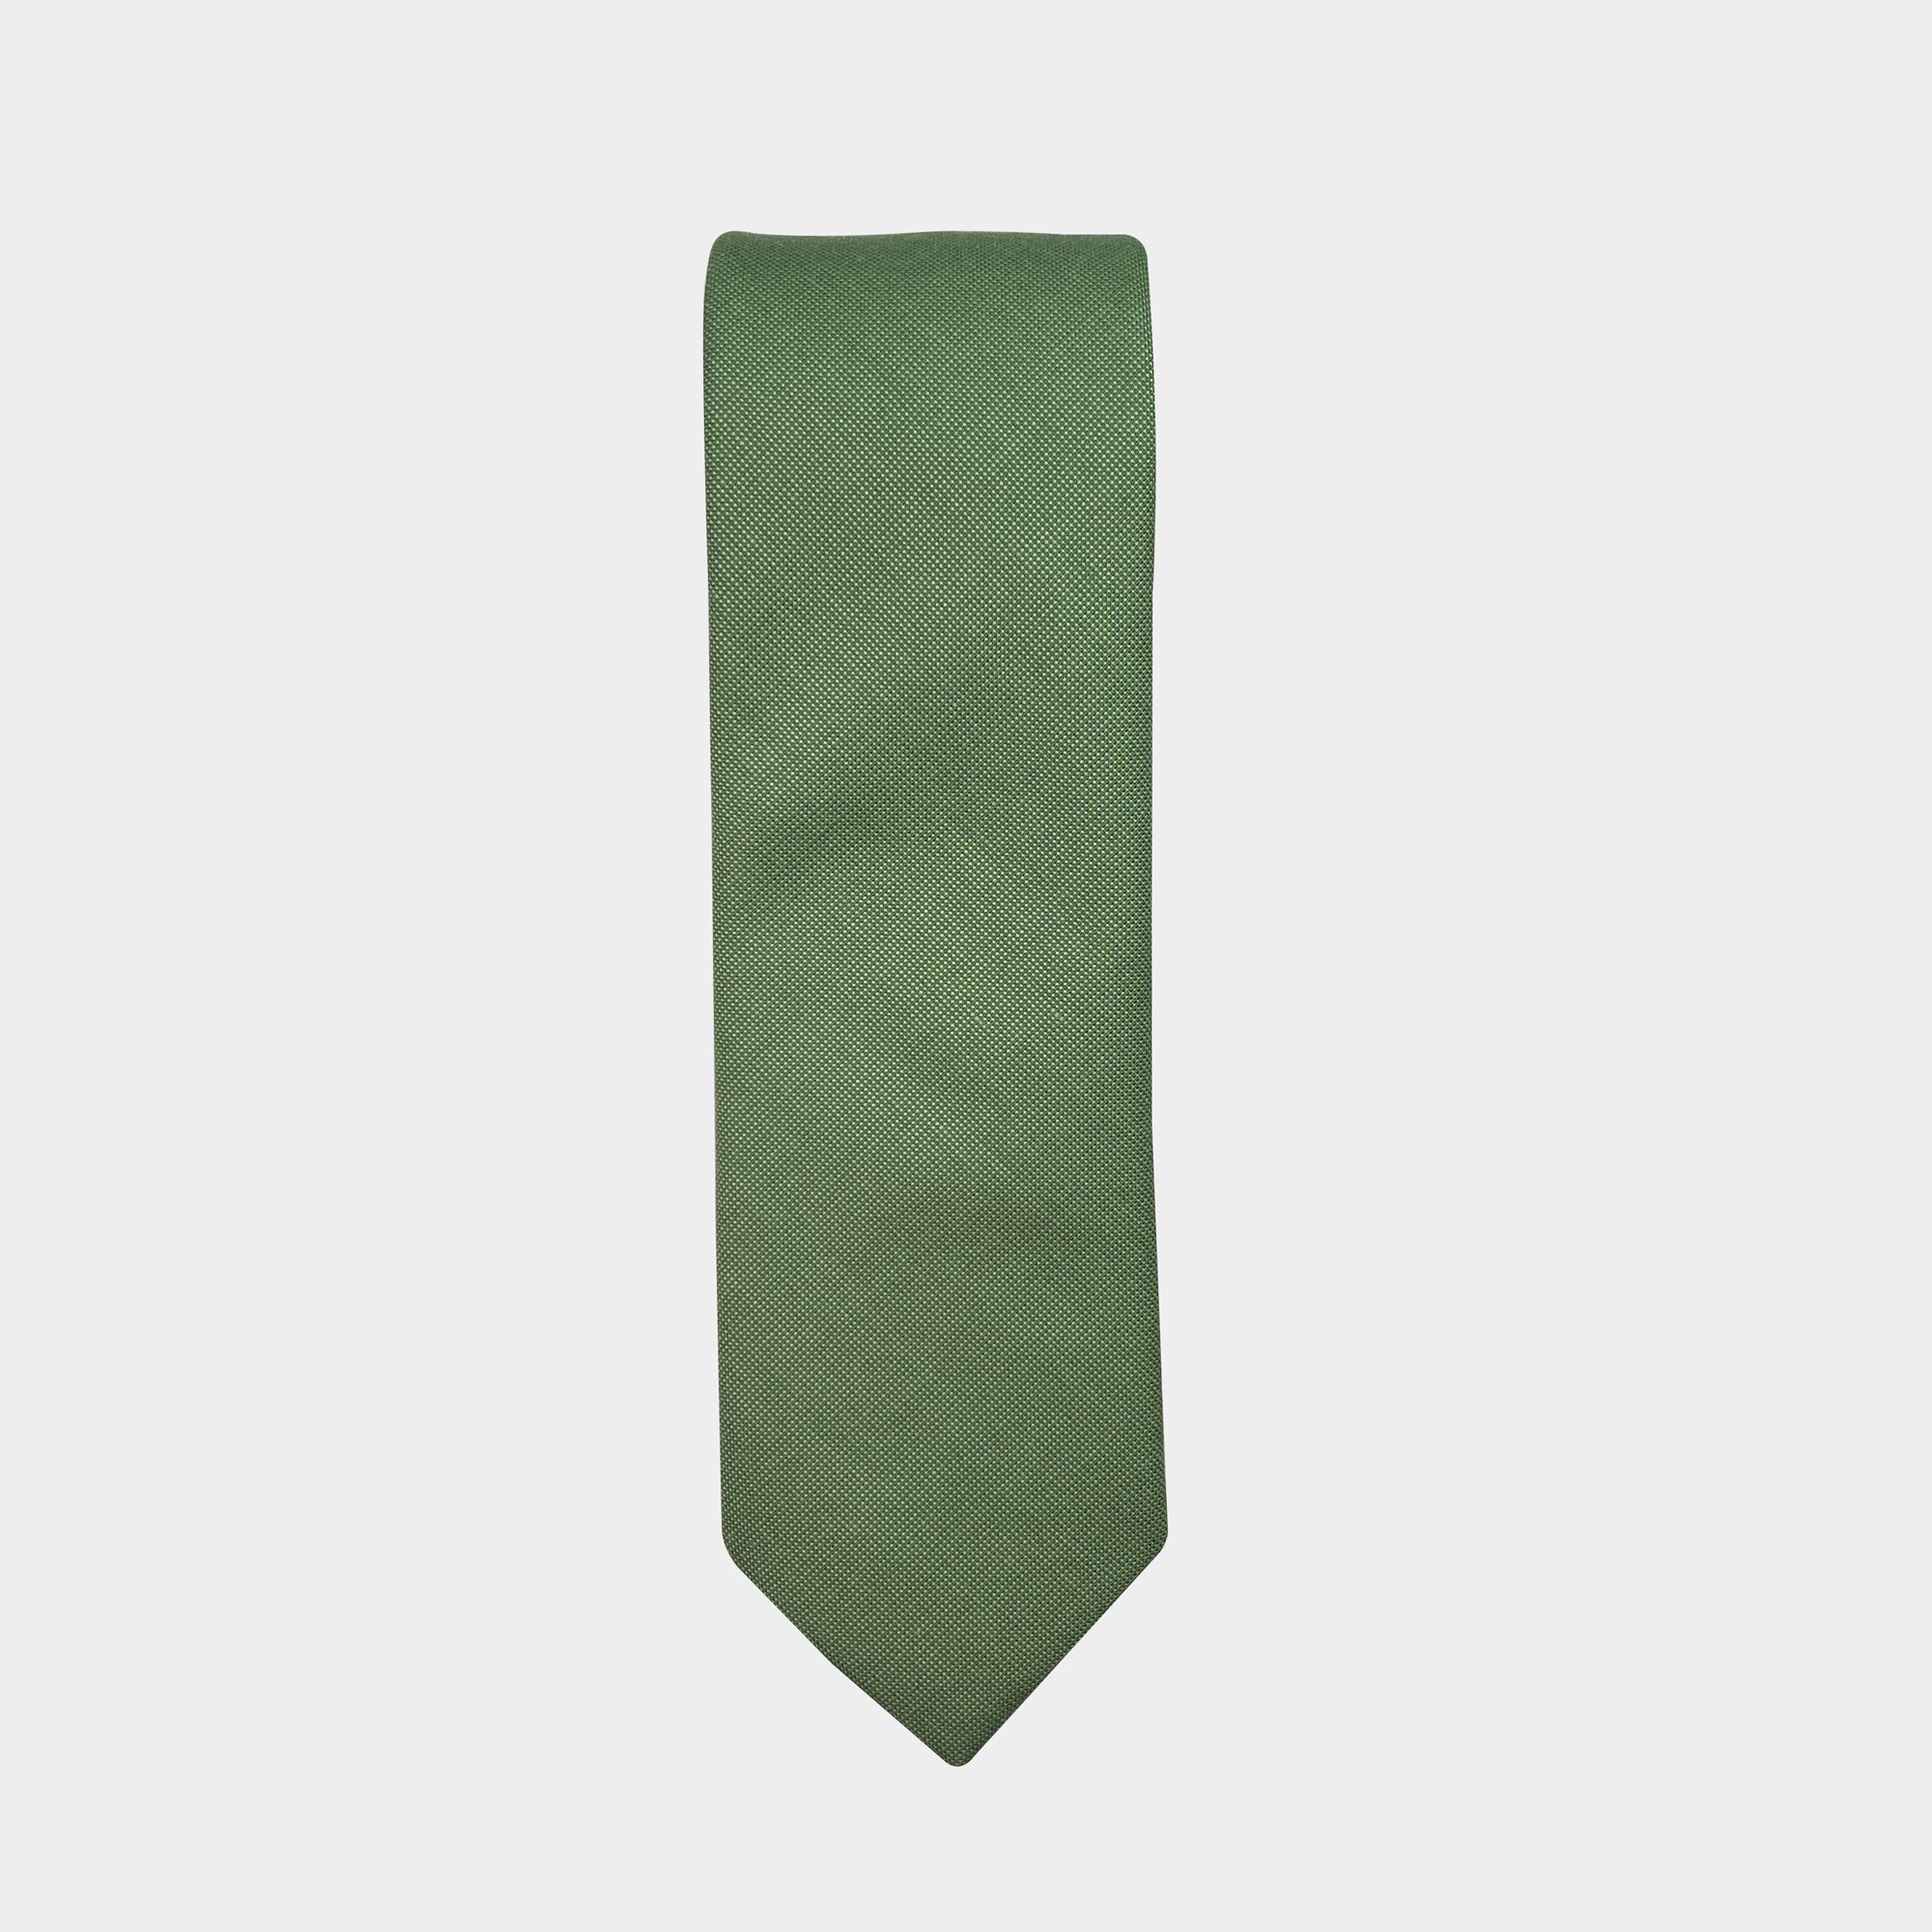 JARRETT - Men's Tie